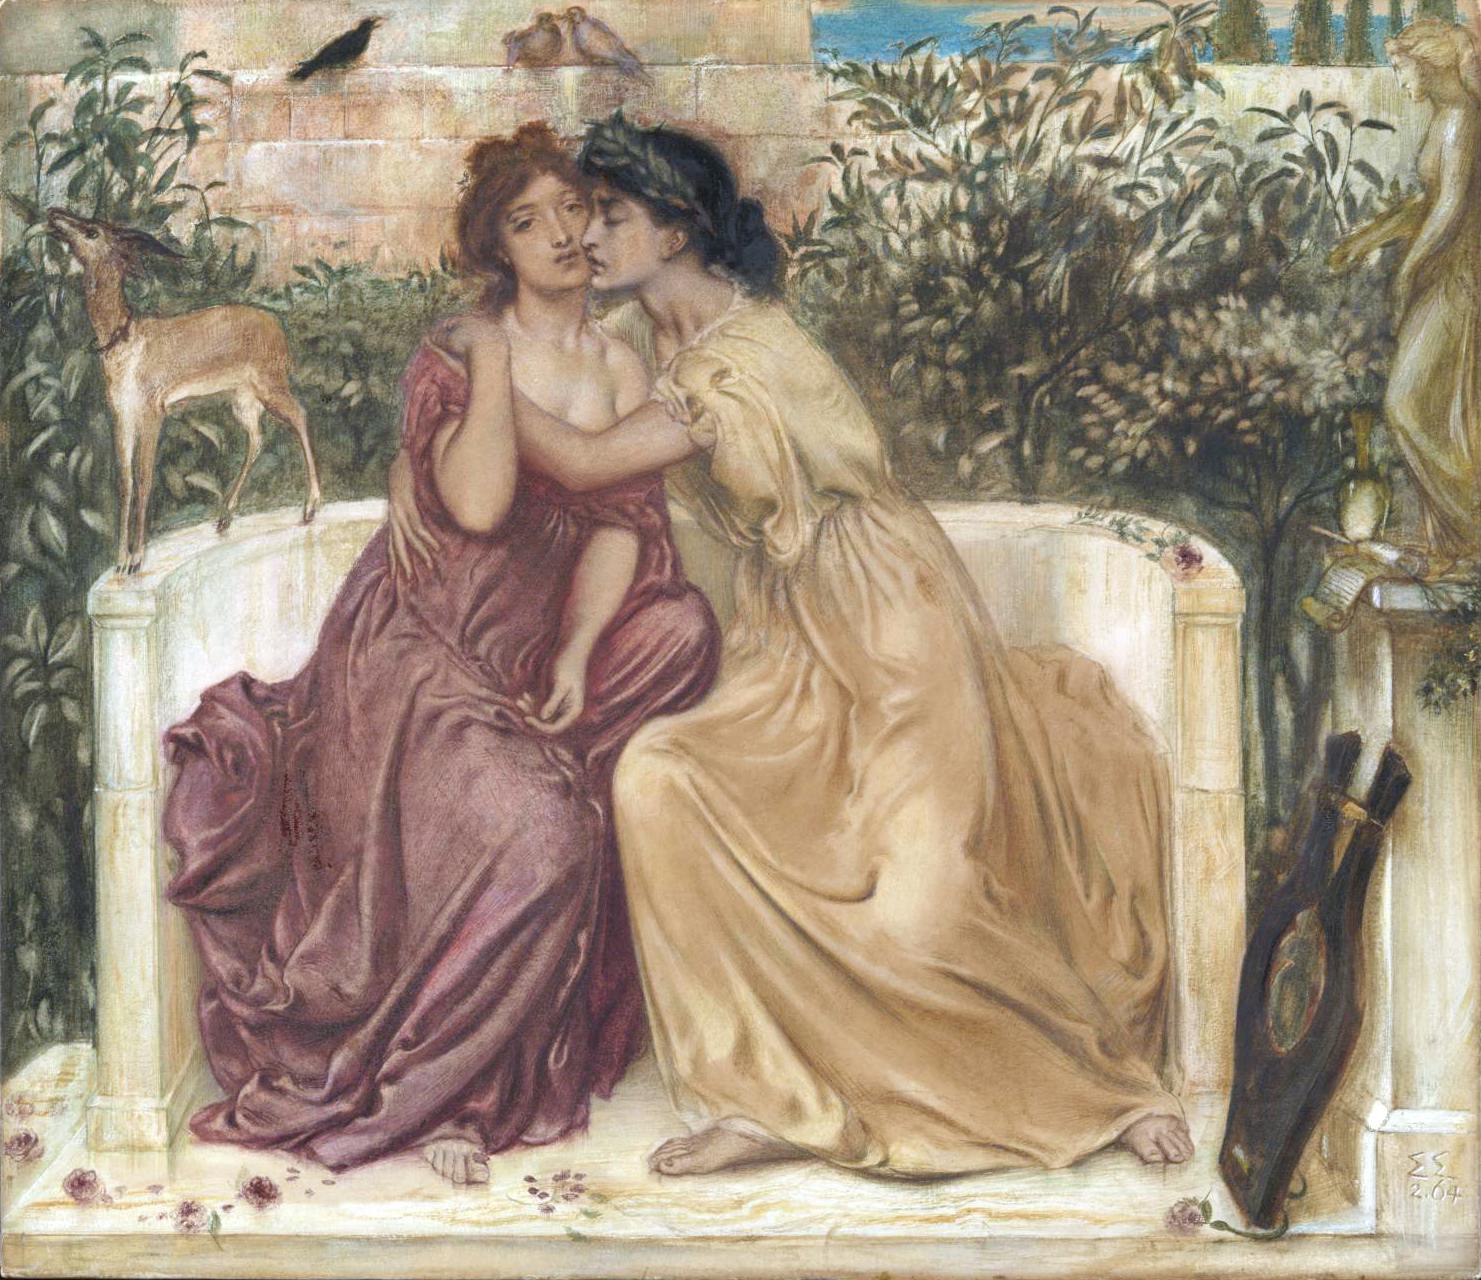 تصویر از ویکی‌پدیا: یک نقاشی قرن نوزدهمی که سوپفا و یار او را نشان می‌دهد.